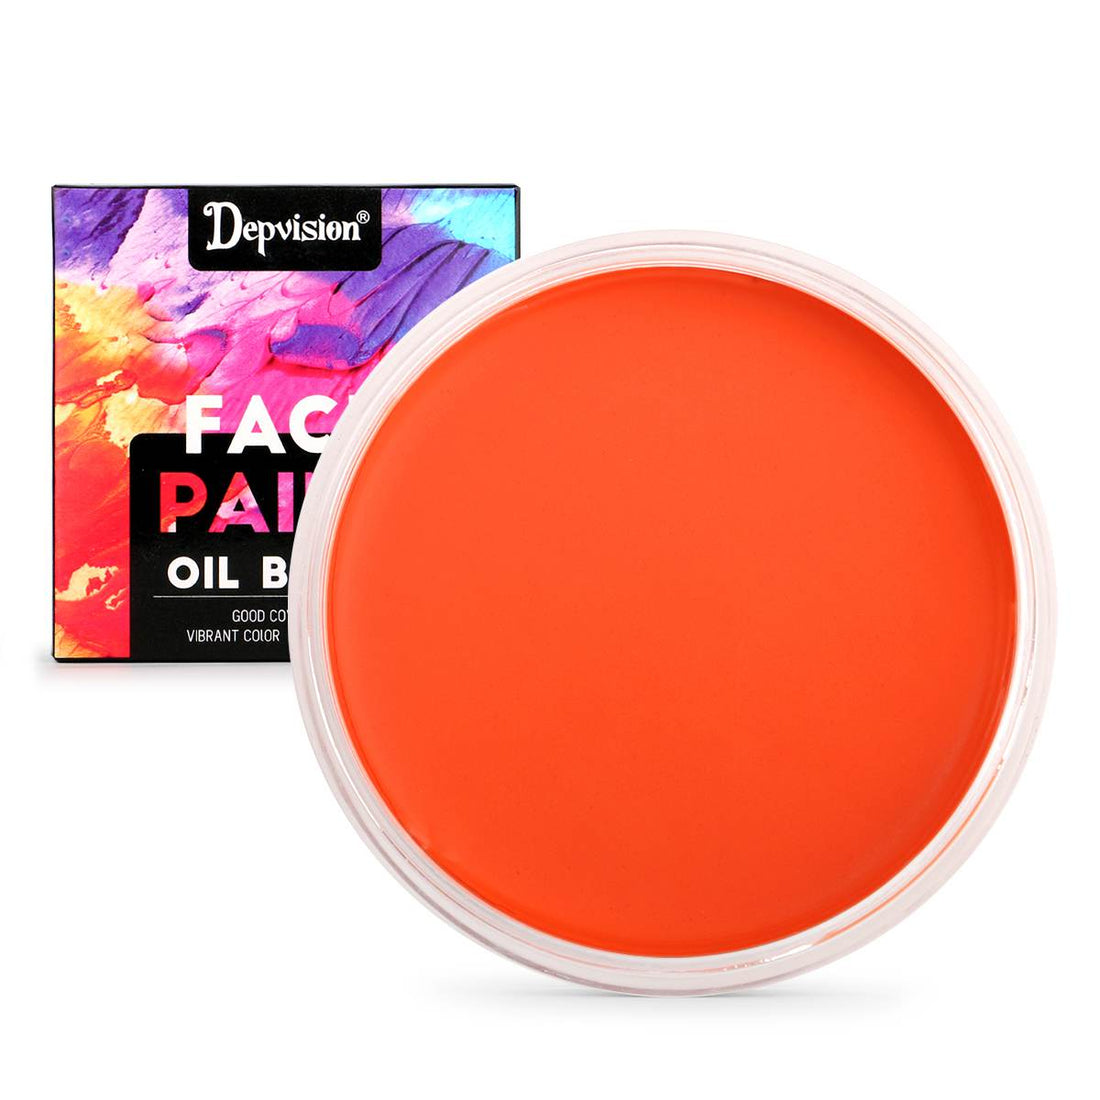 Waterproof Oil Based Face Paint - Orange